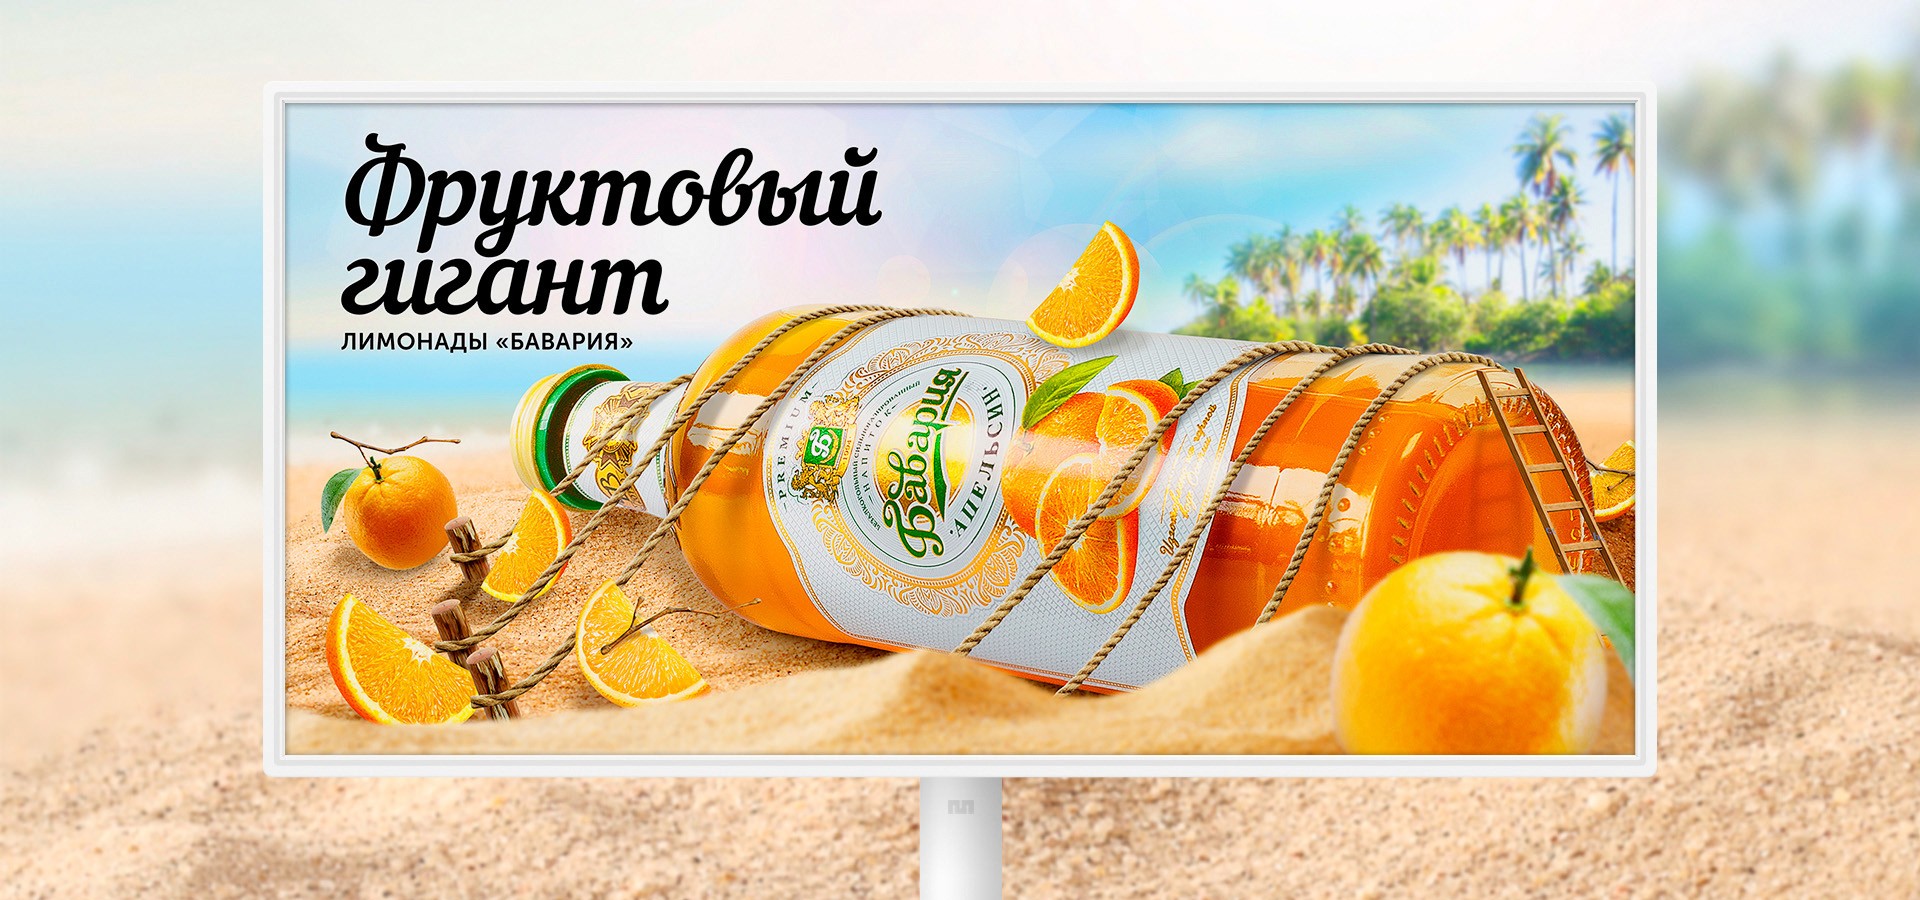 Брендинговое агентство Stors разработало рекламную кампанию, в основе которой вкусовые качества продукции «Бавария» и специфика потребления лимонада